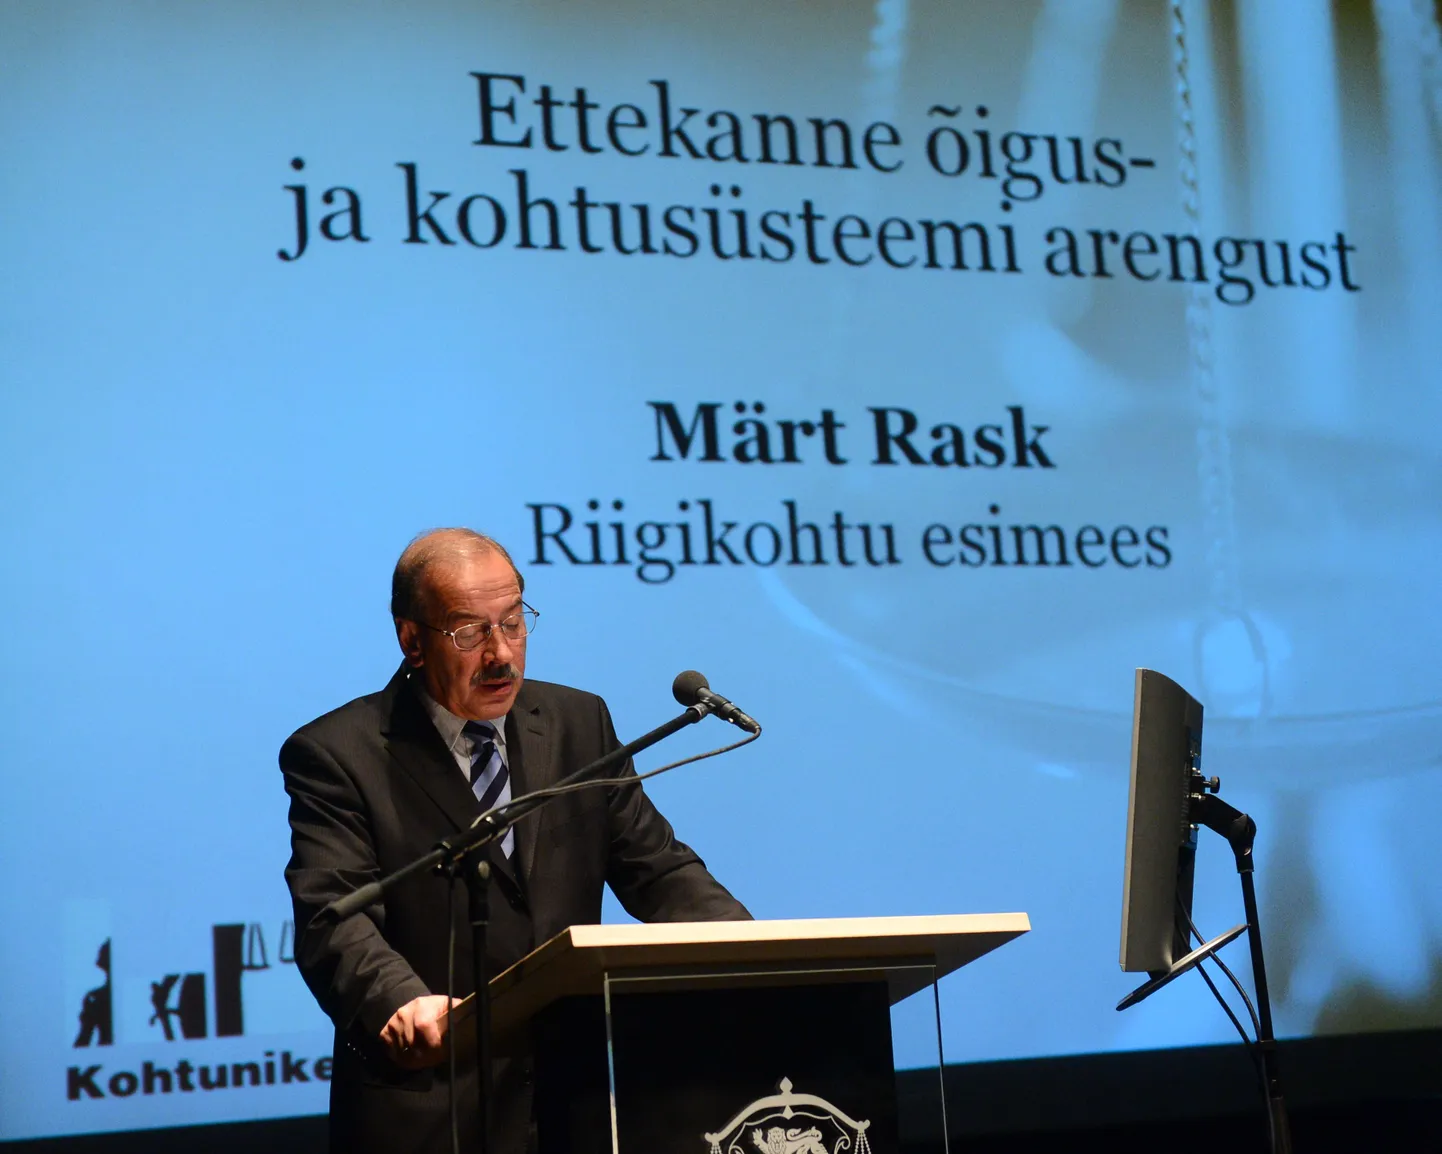 Eesti kohtunikud kogunesid arutama kohtusüsteemi arenguid. Täiskogu alguses esines ettekandega riigikohtu esimees Märt Rask.